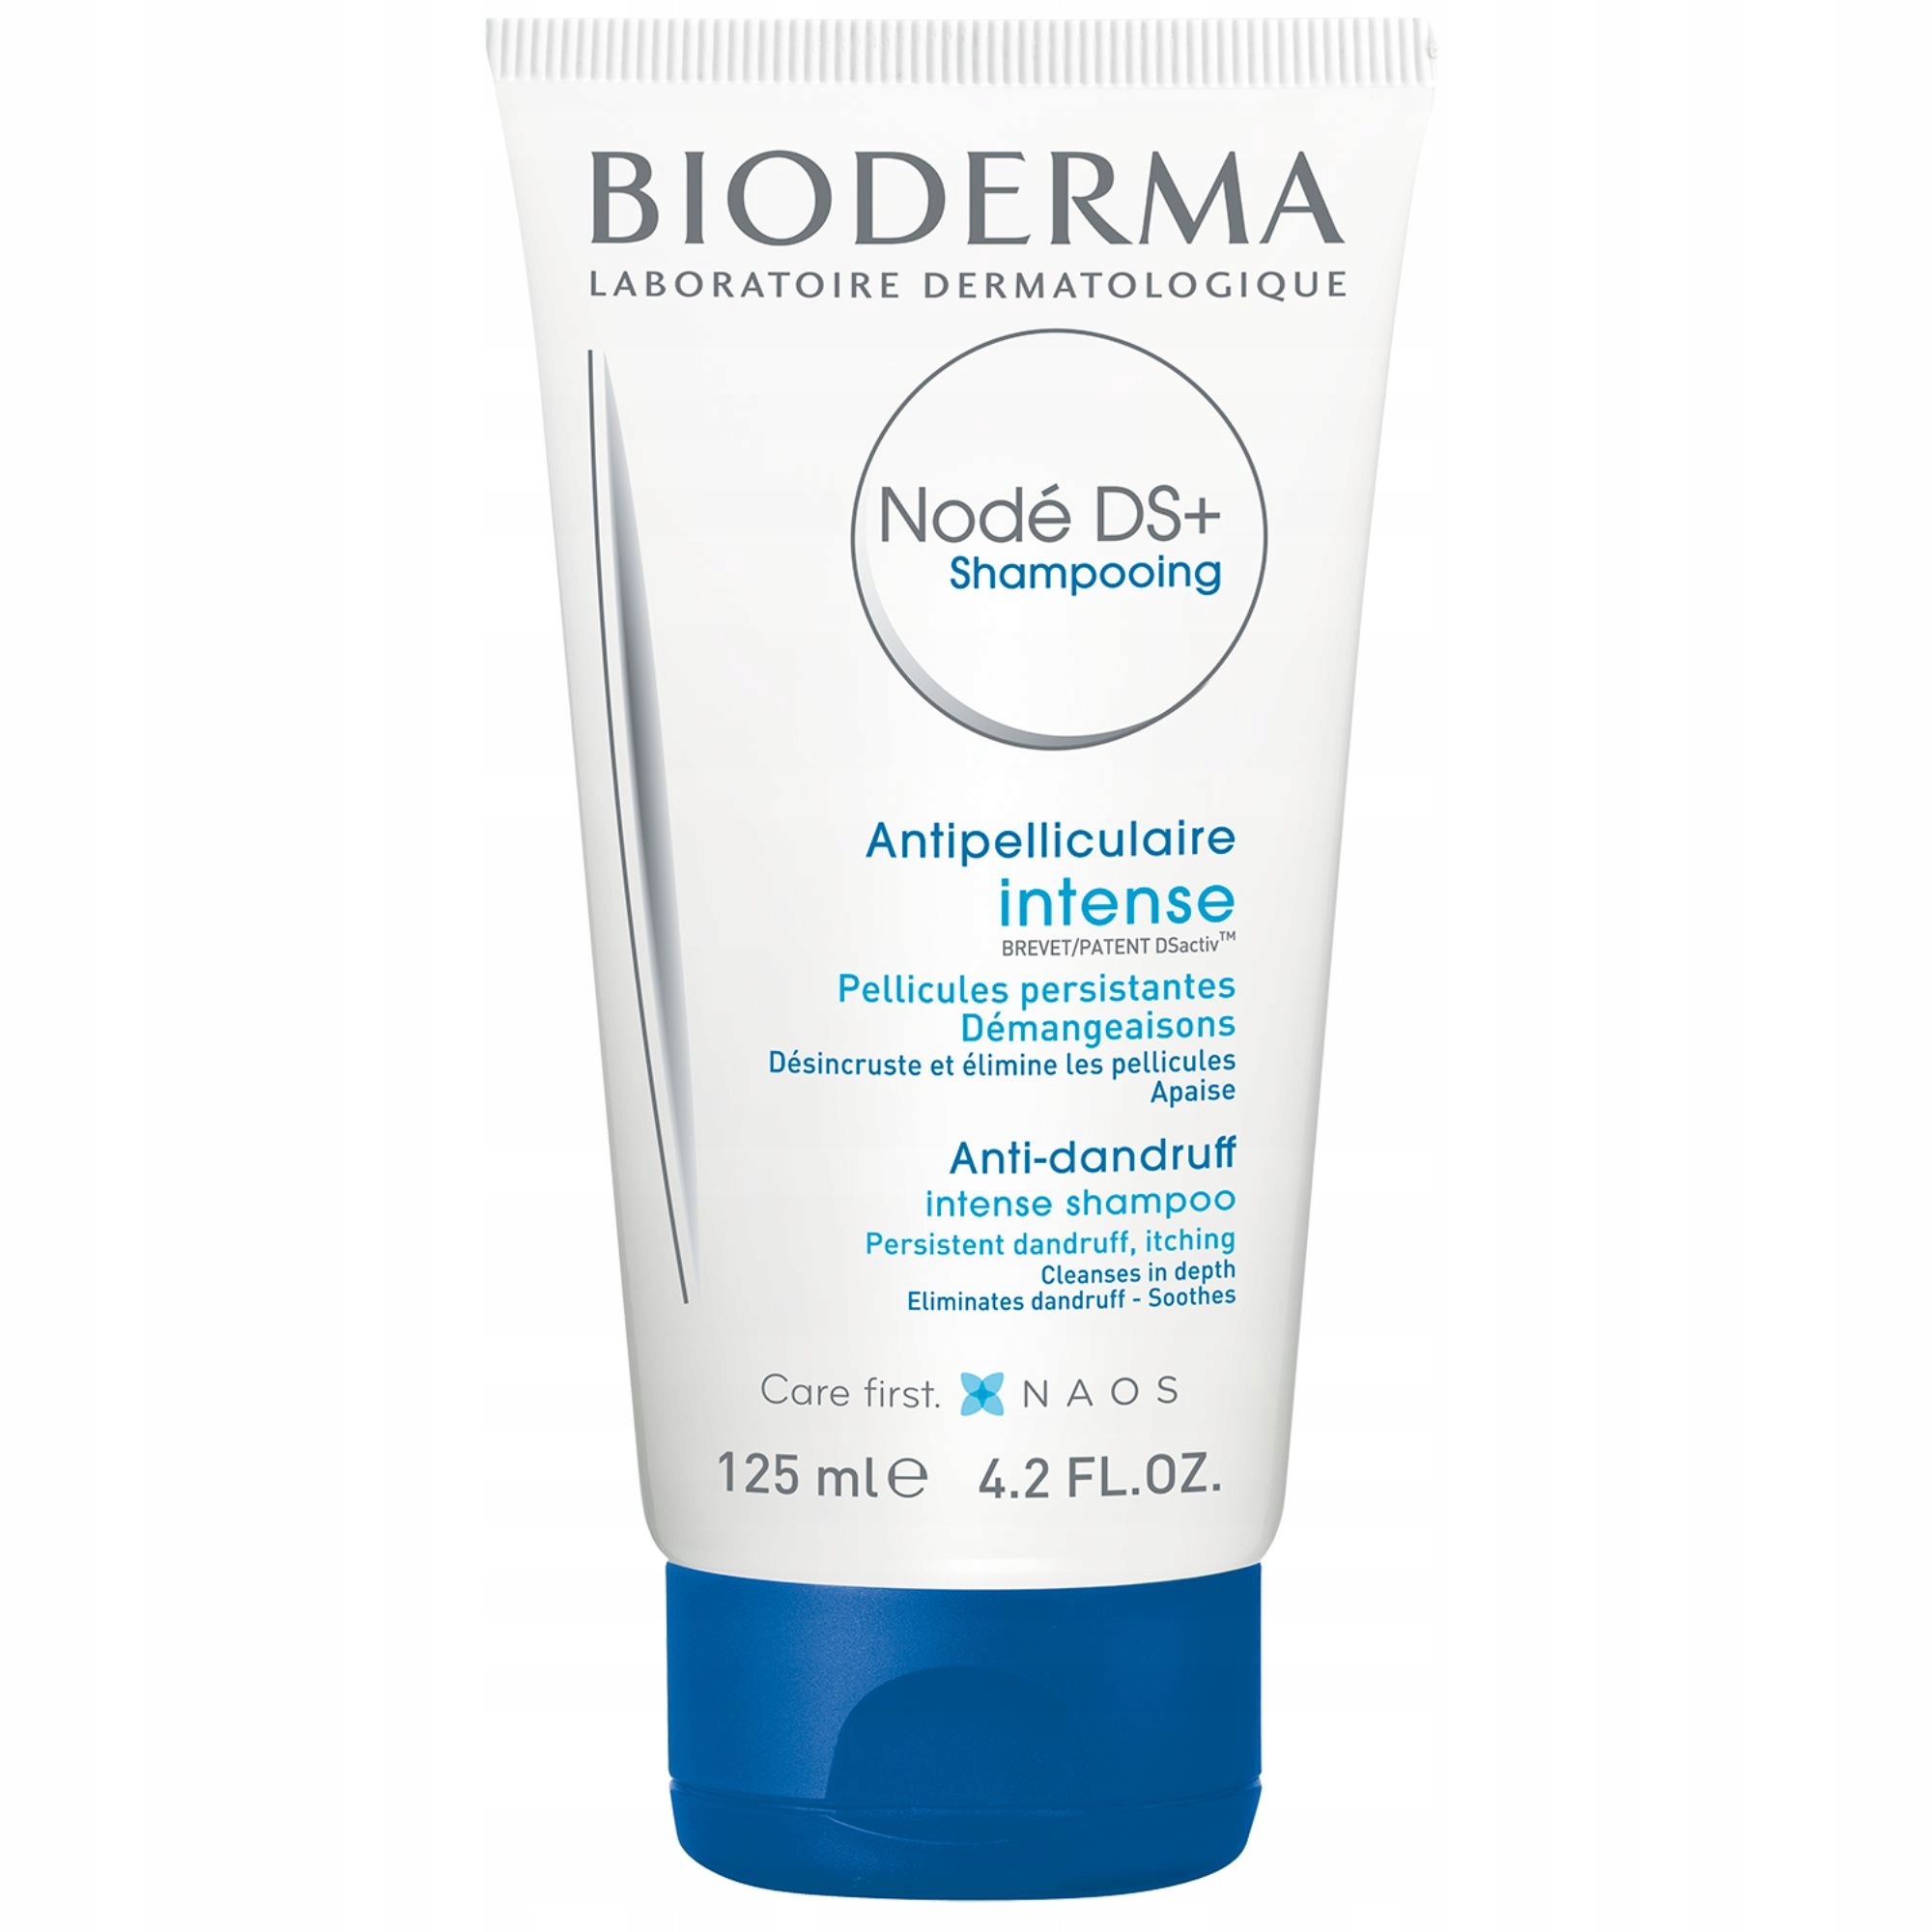 bioderma node k szampon opinie